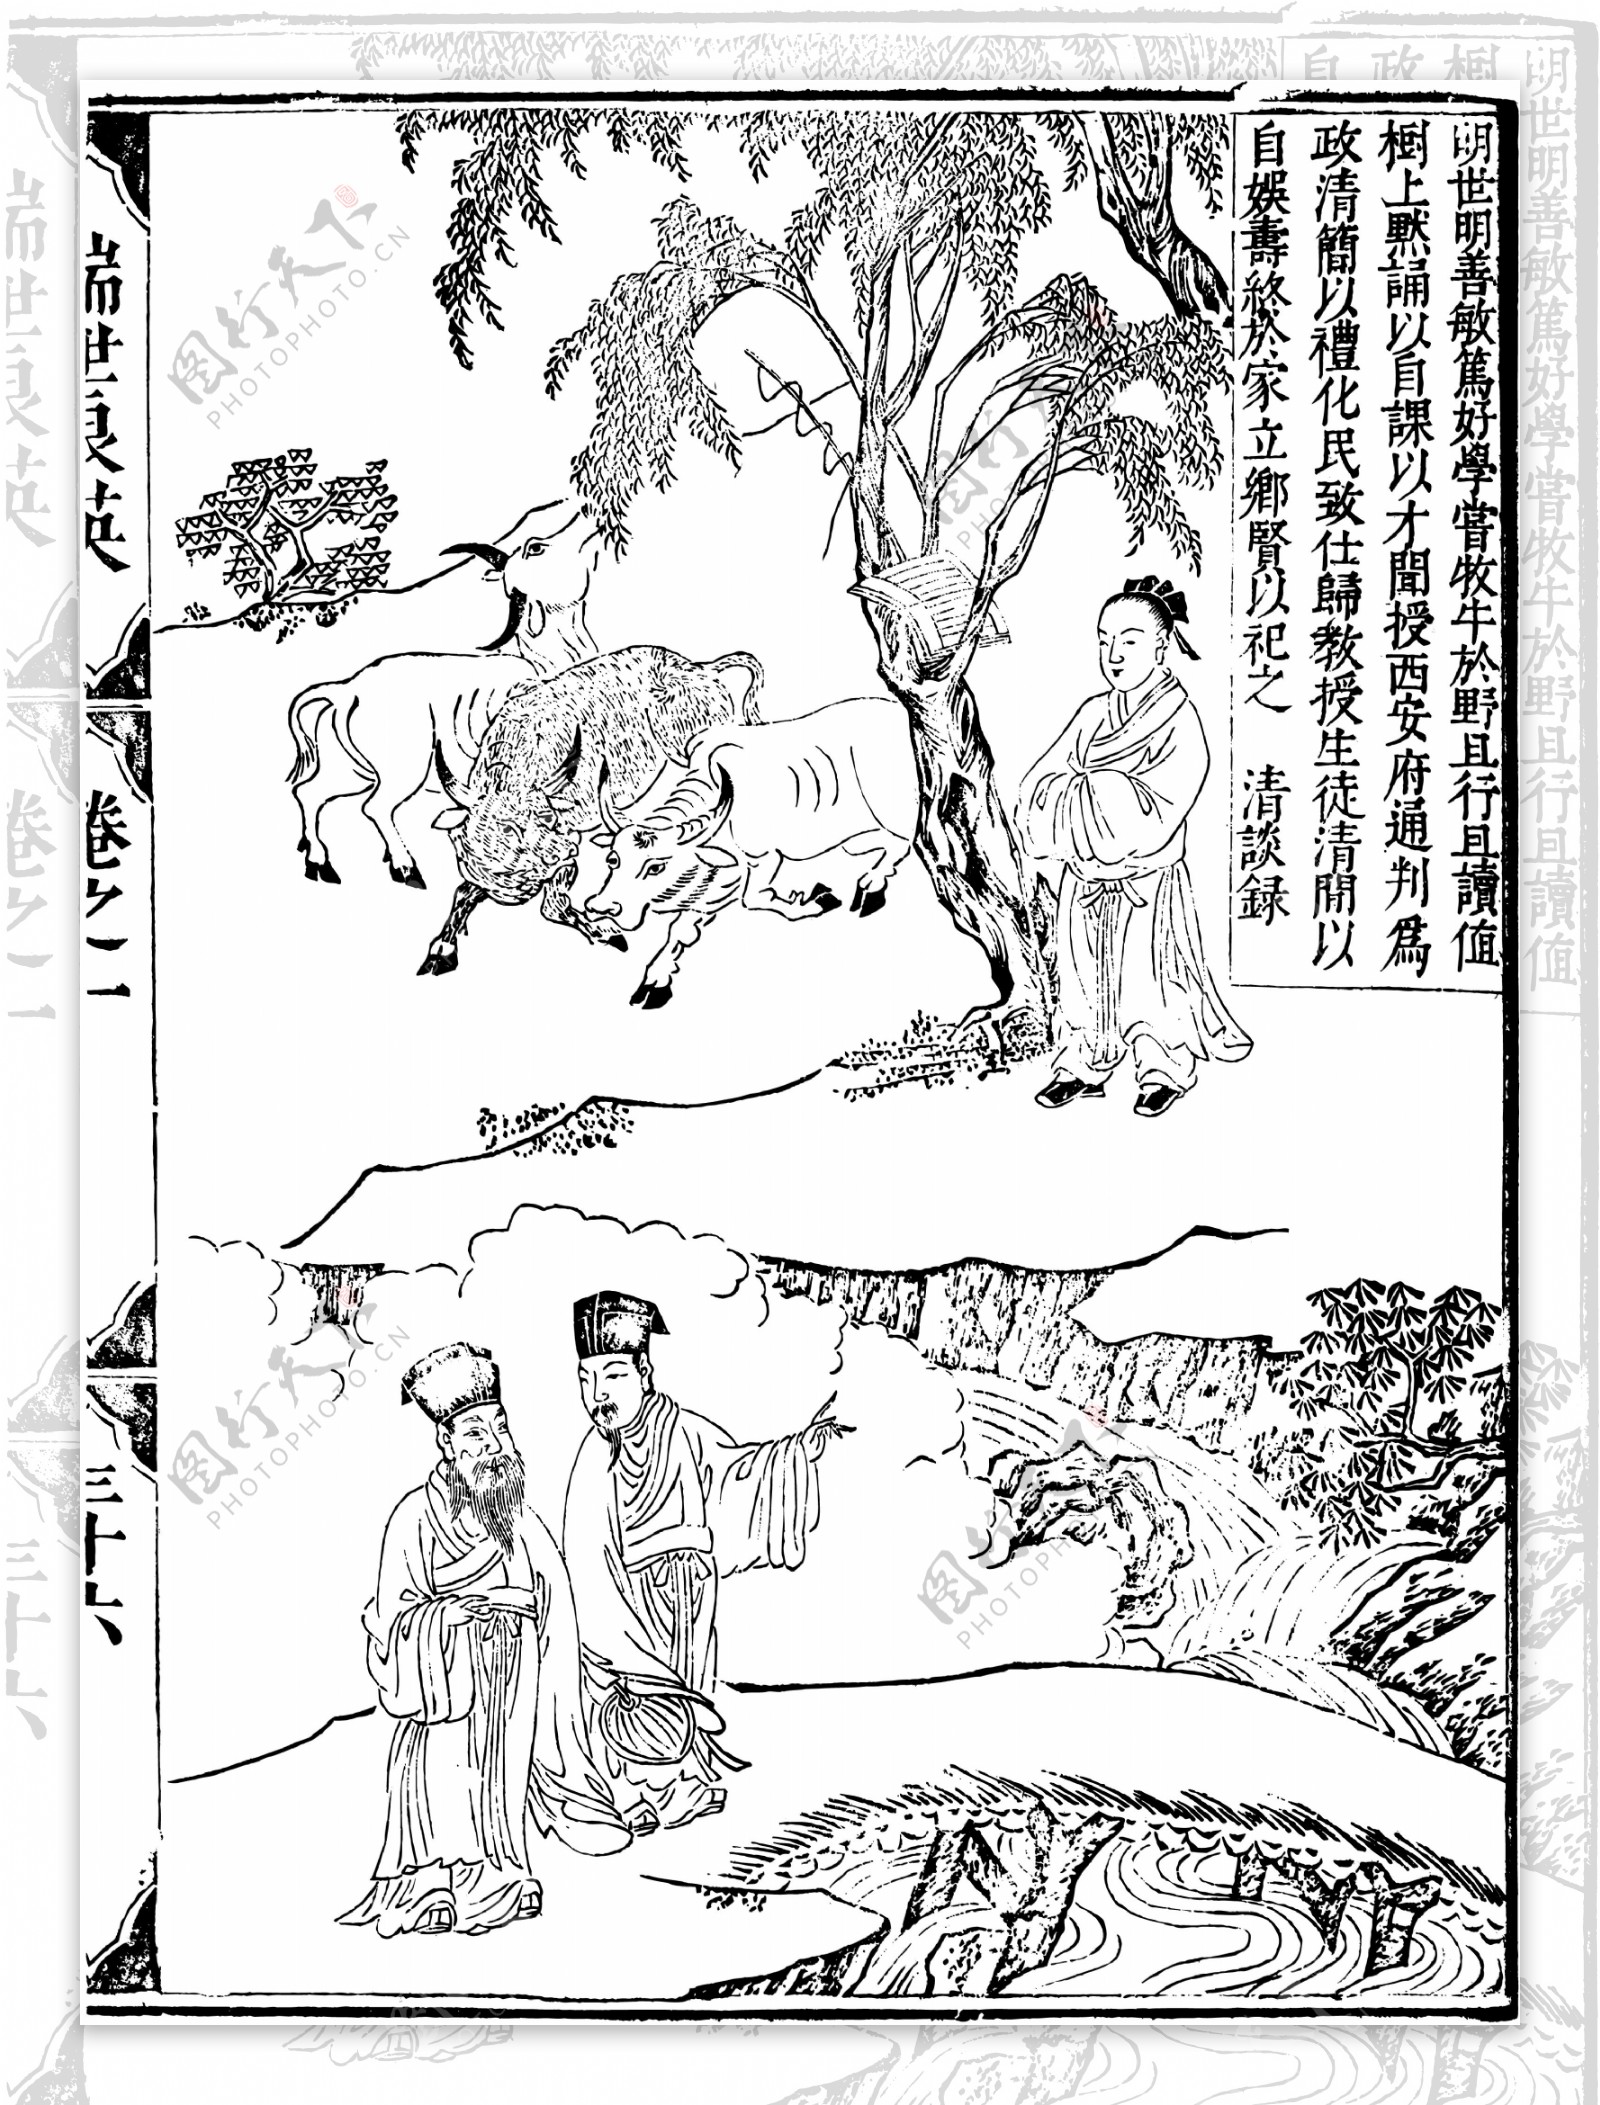 瑞世良英木刻版画中国传统文化60